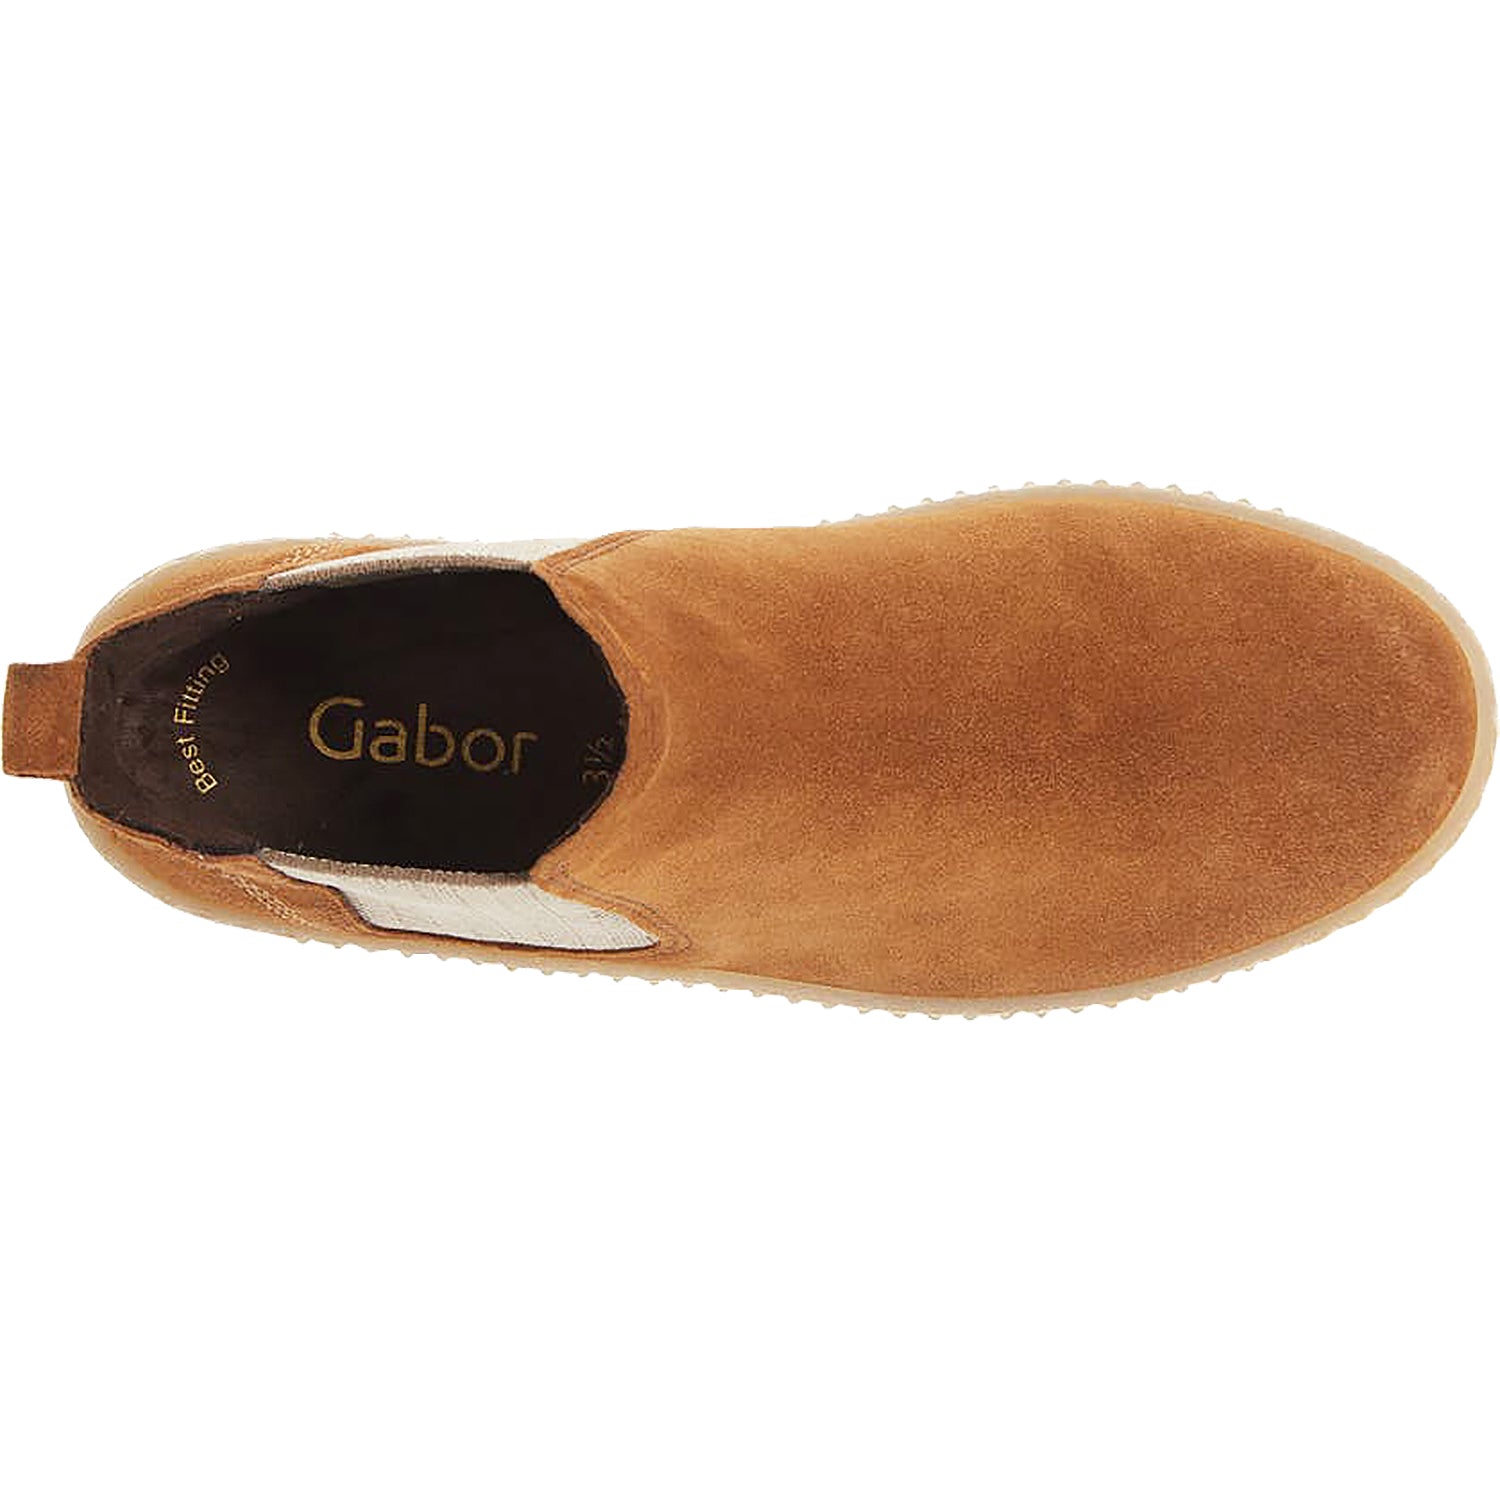 Ankle boots GABOR 71.651.14 Cognac